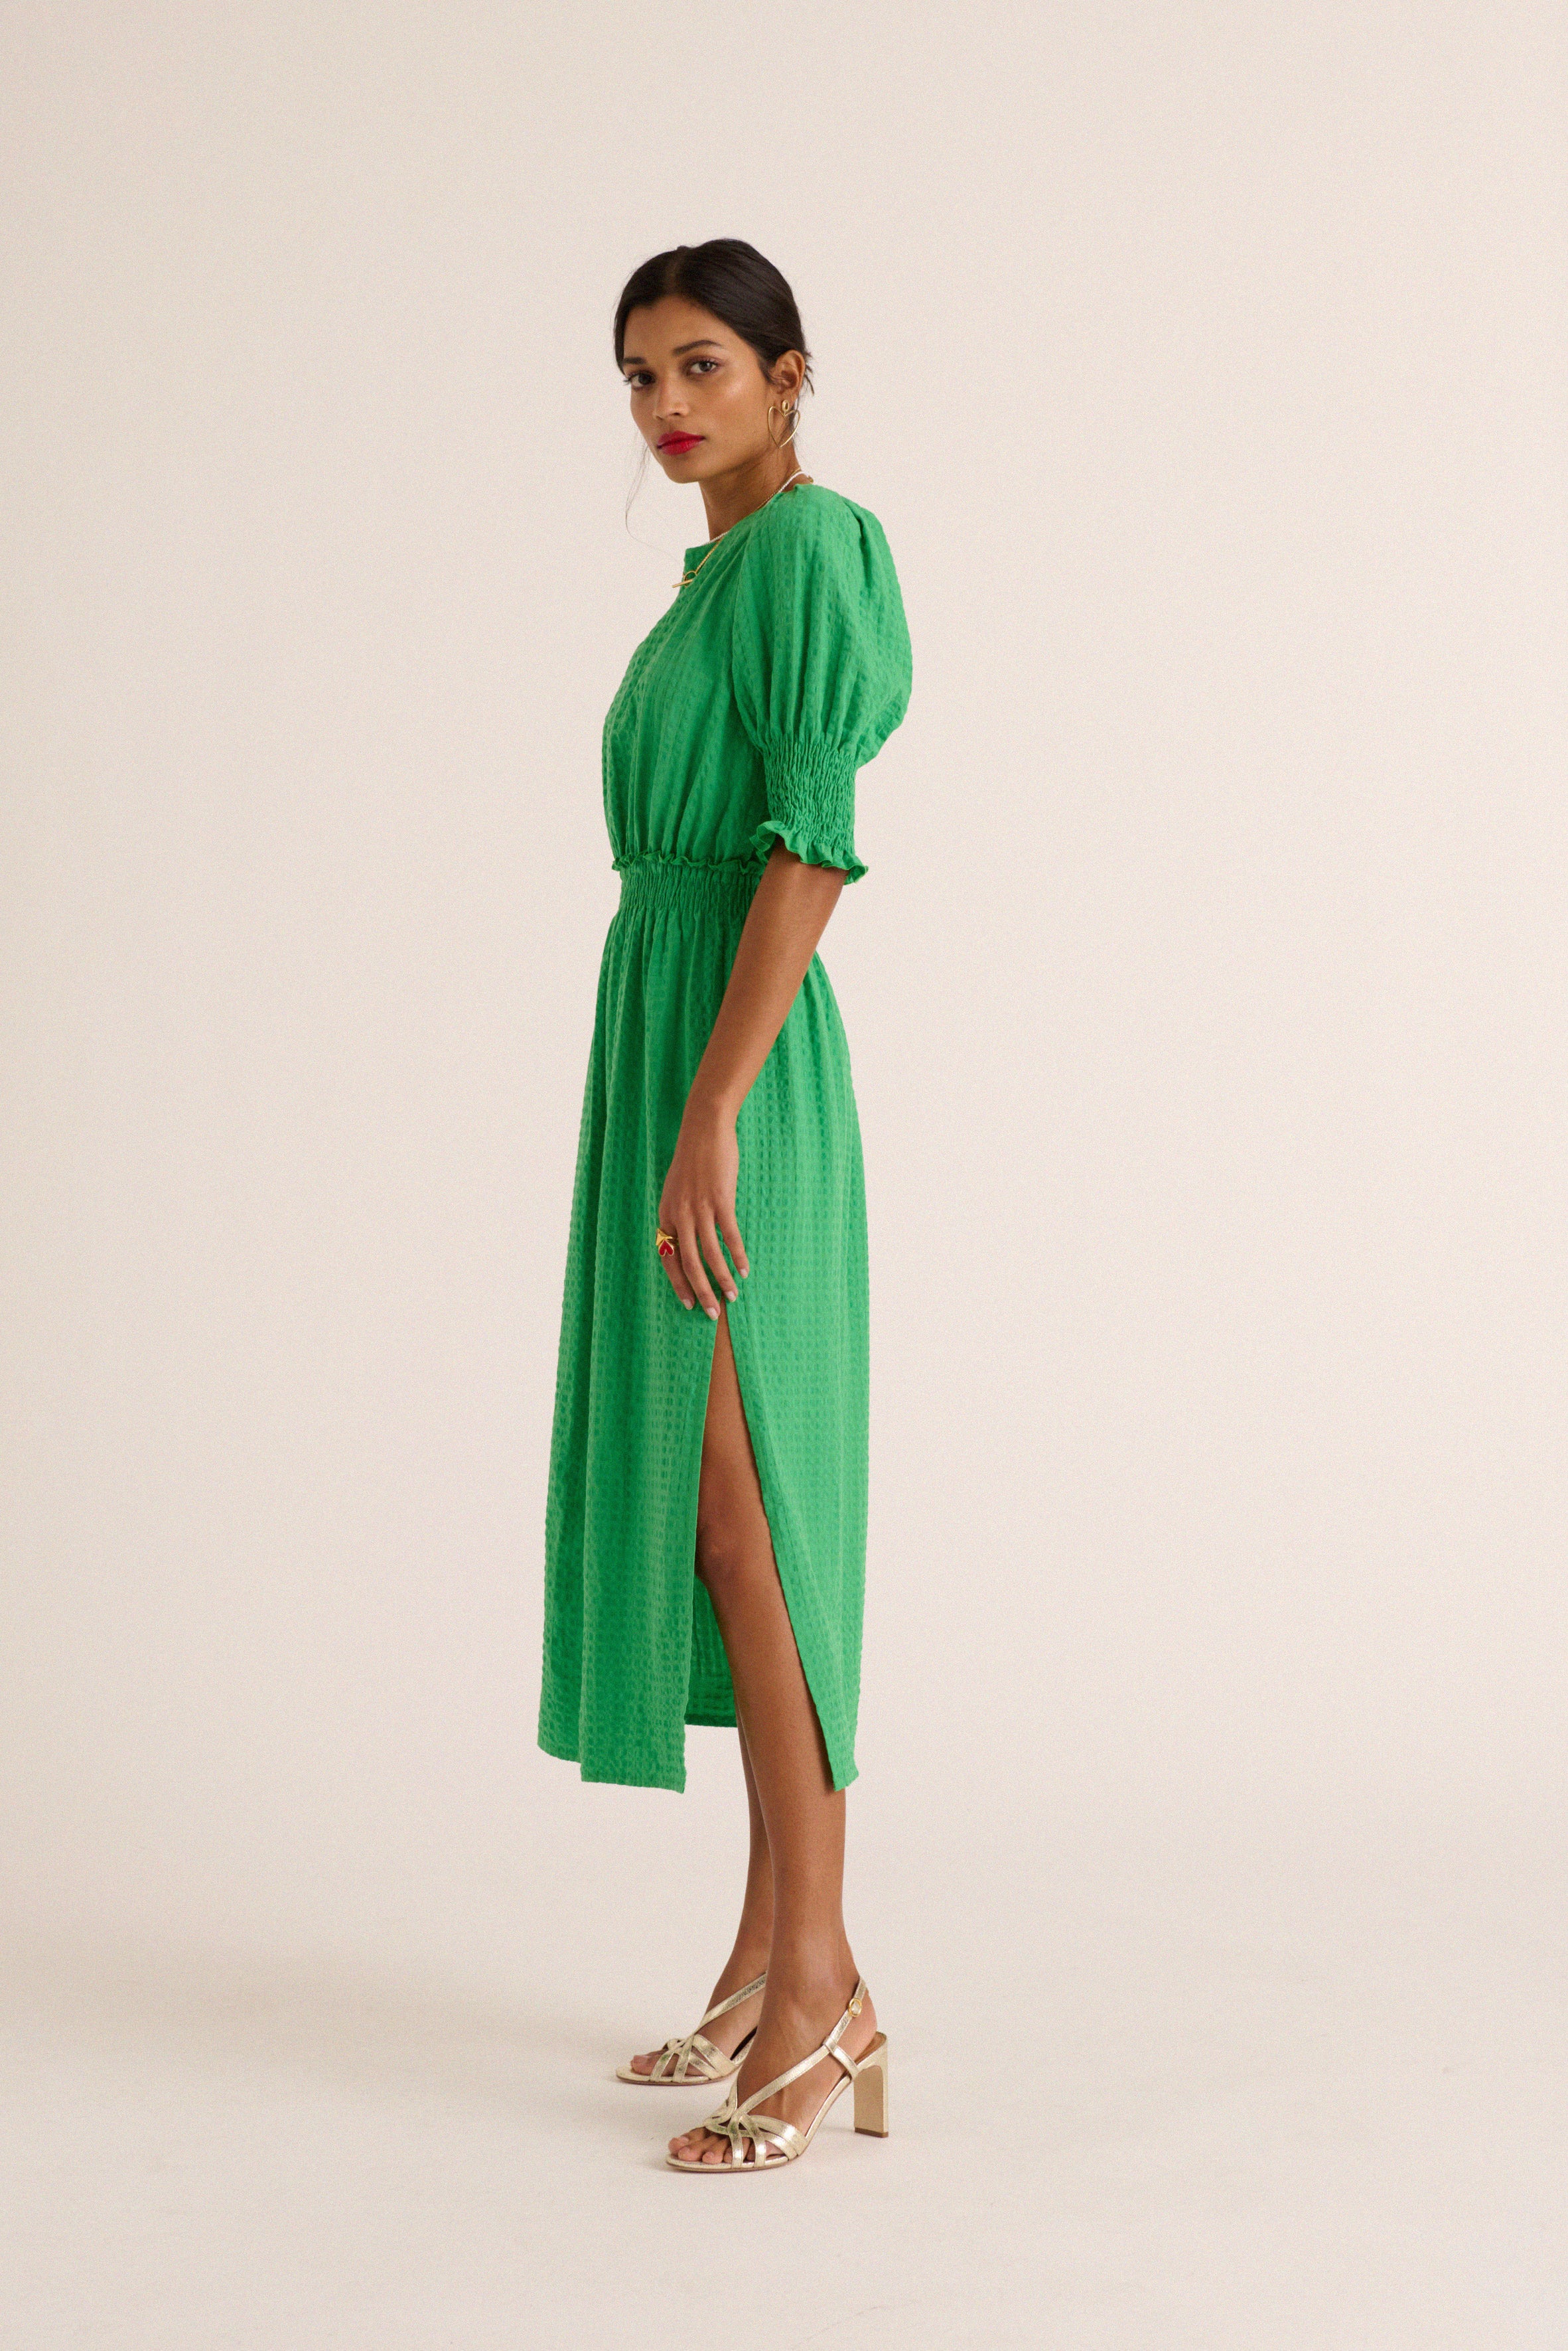 Lawn green Celeste dress